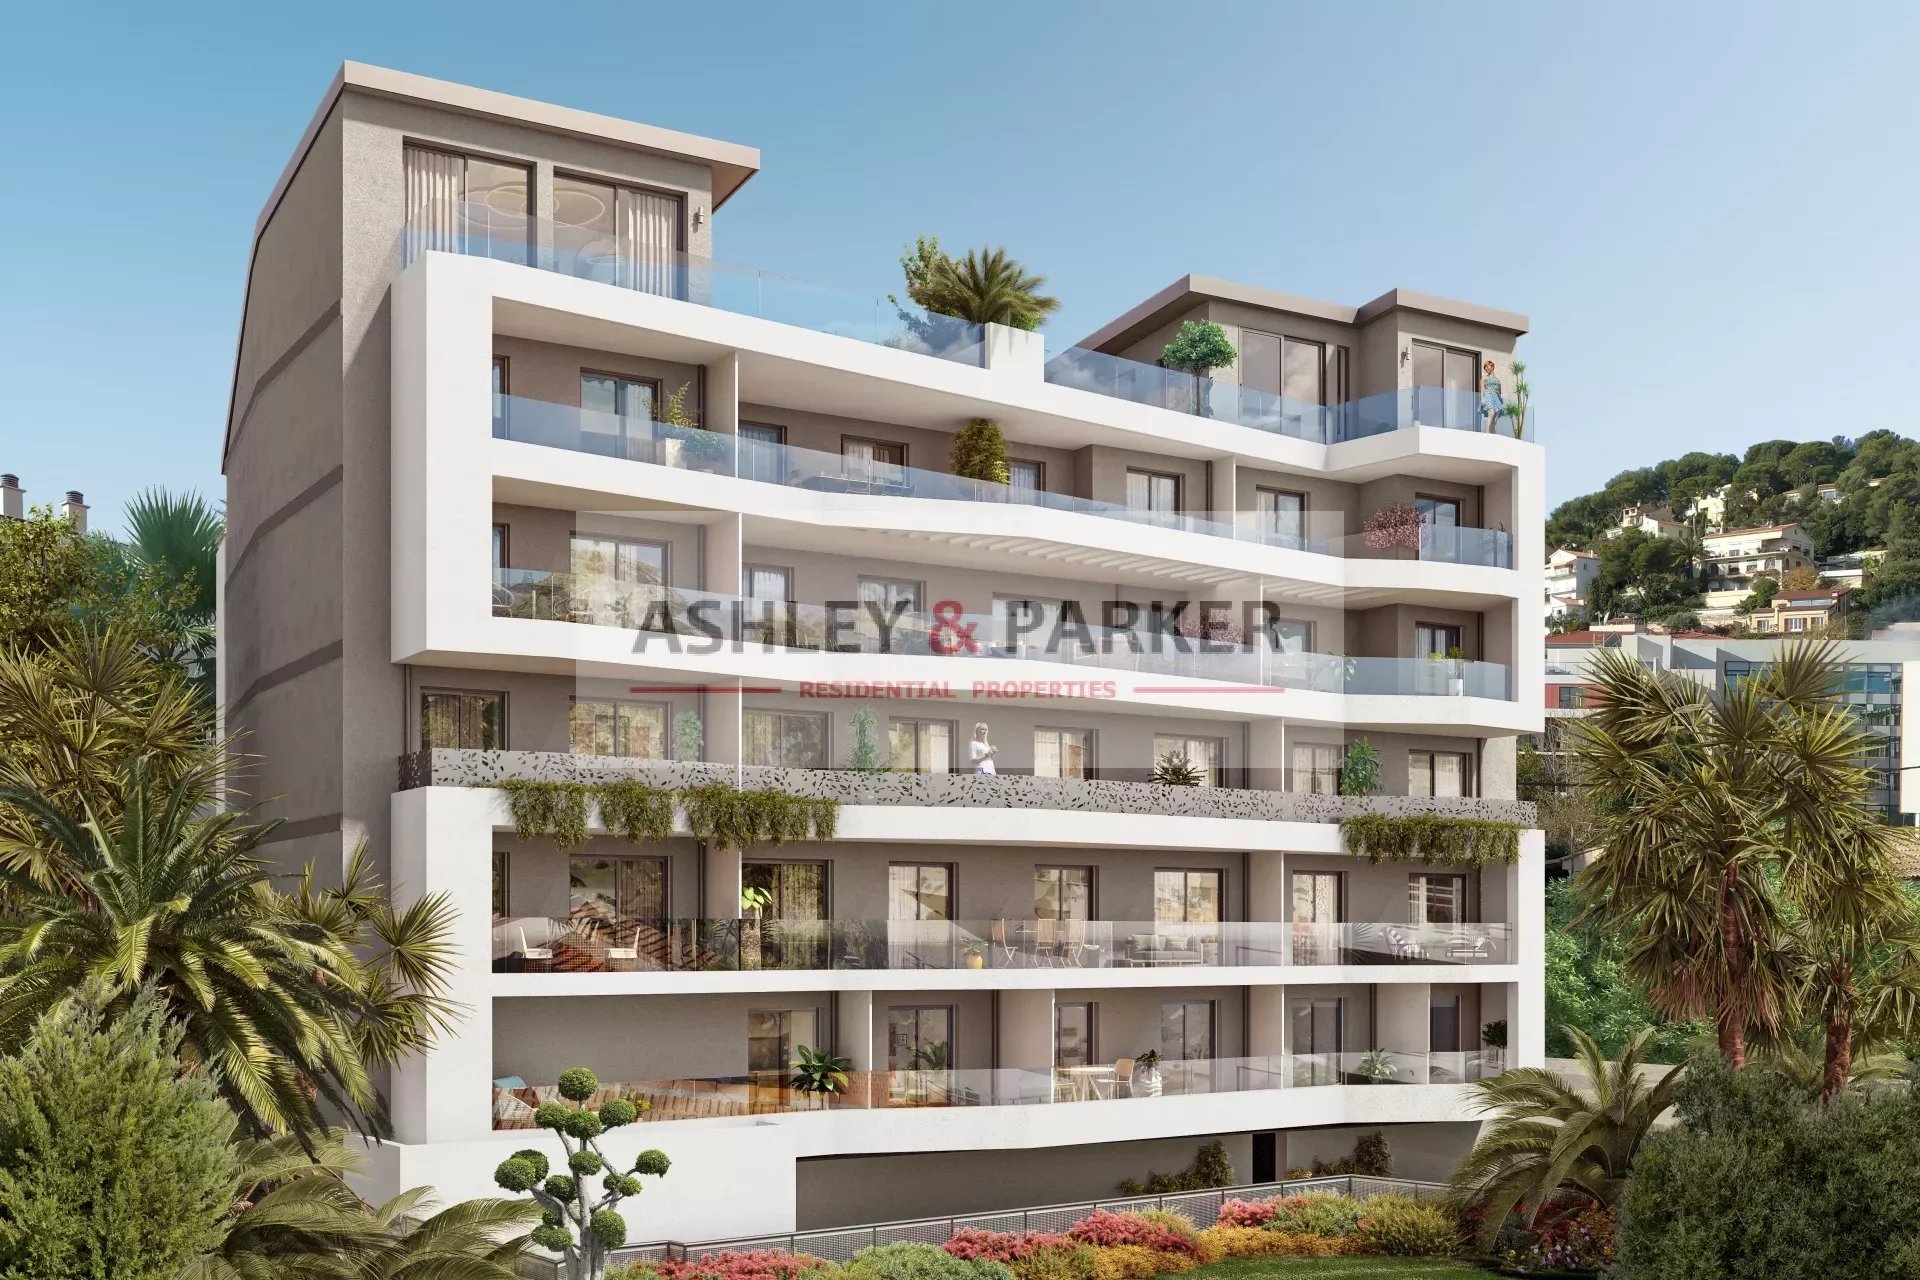 Vente Appartement 51m² 2 Pièces à Roquebrune-Cap-Martin (06190) - Ashley & Parker